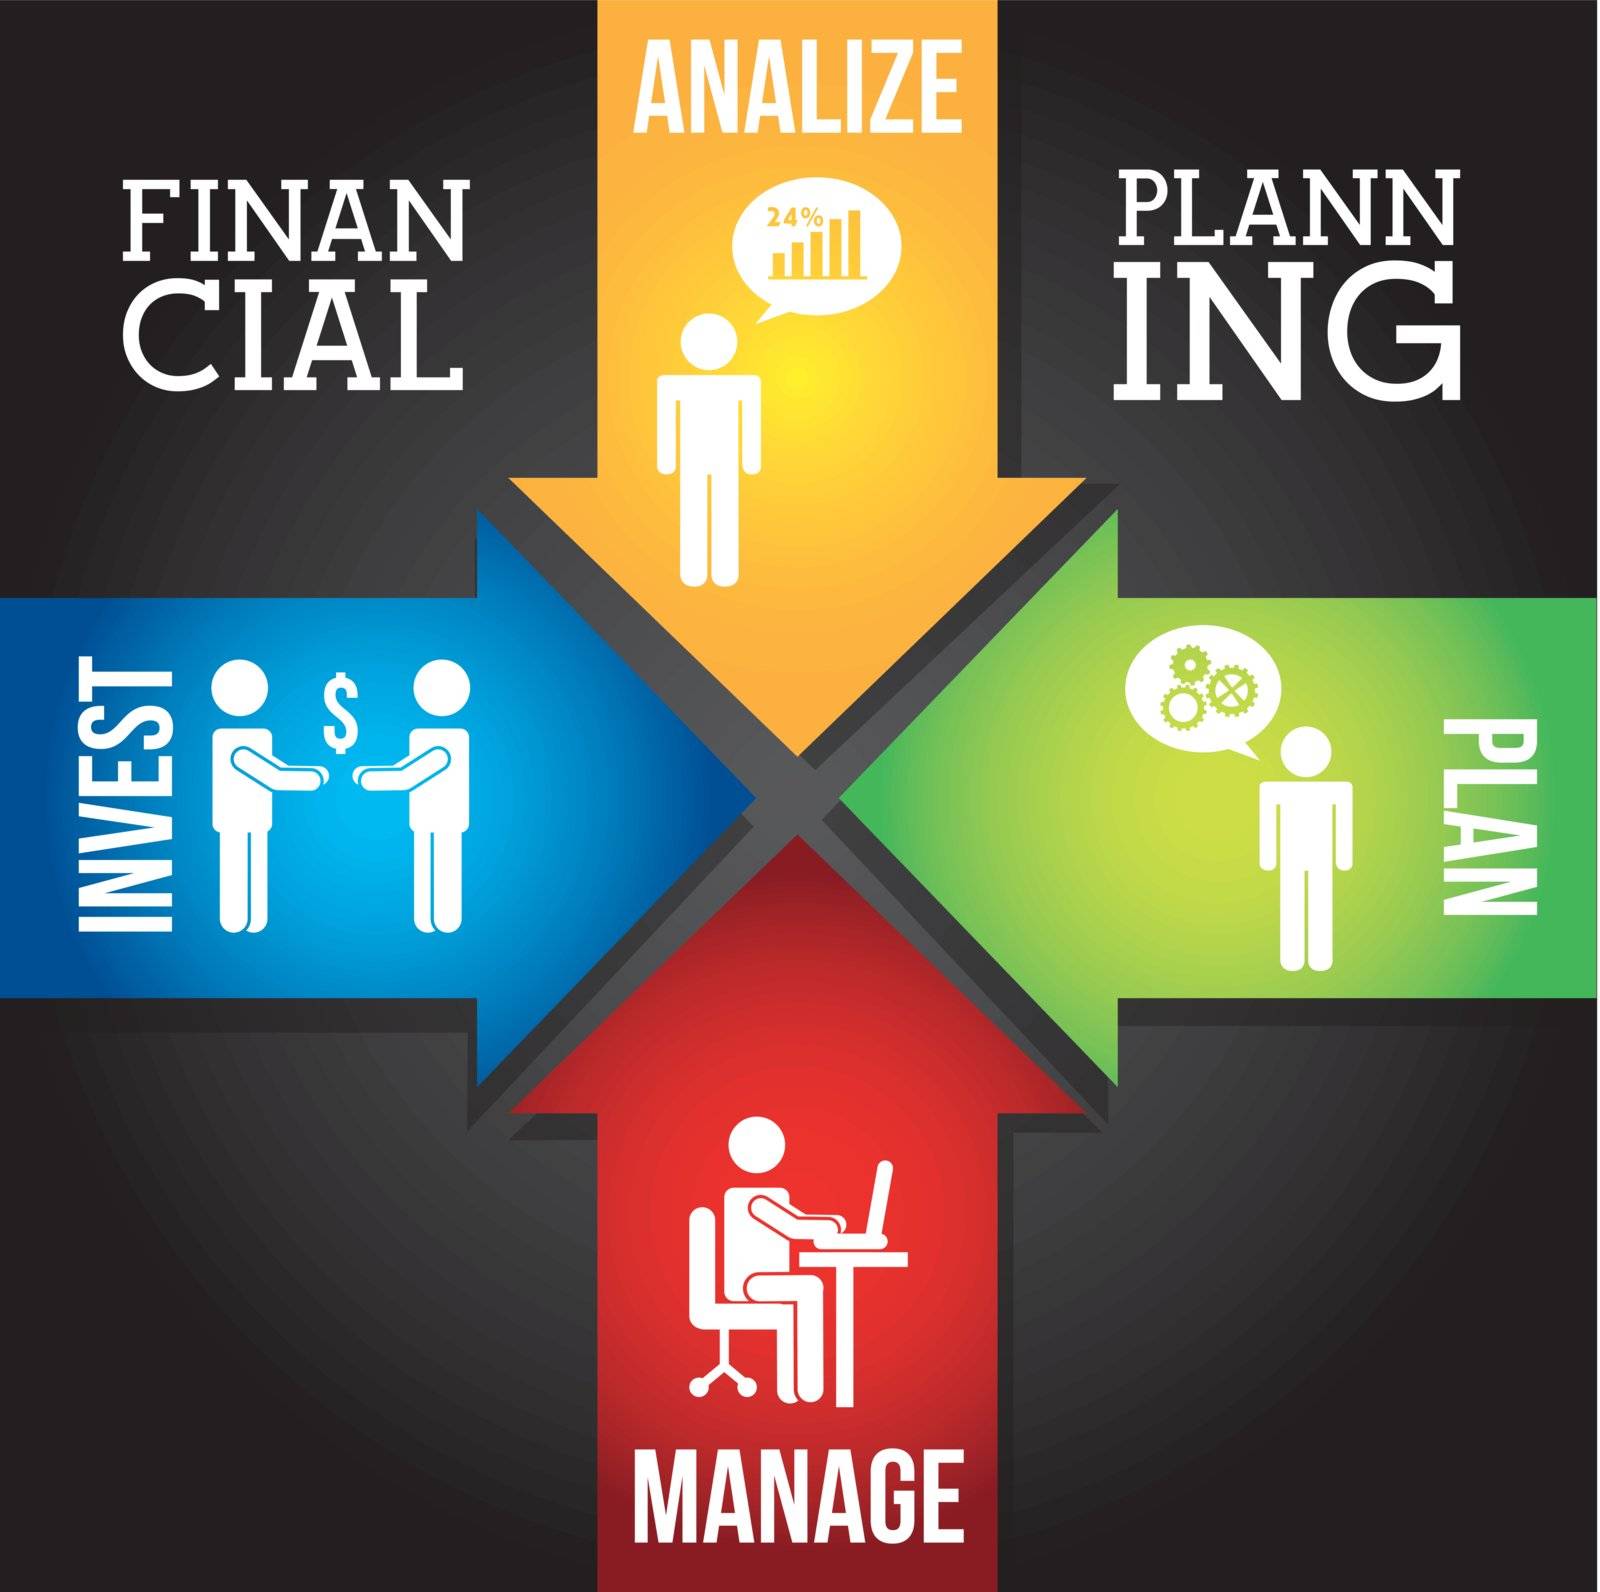 financial planning illustration over black background. vector